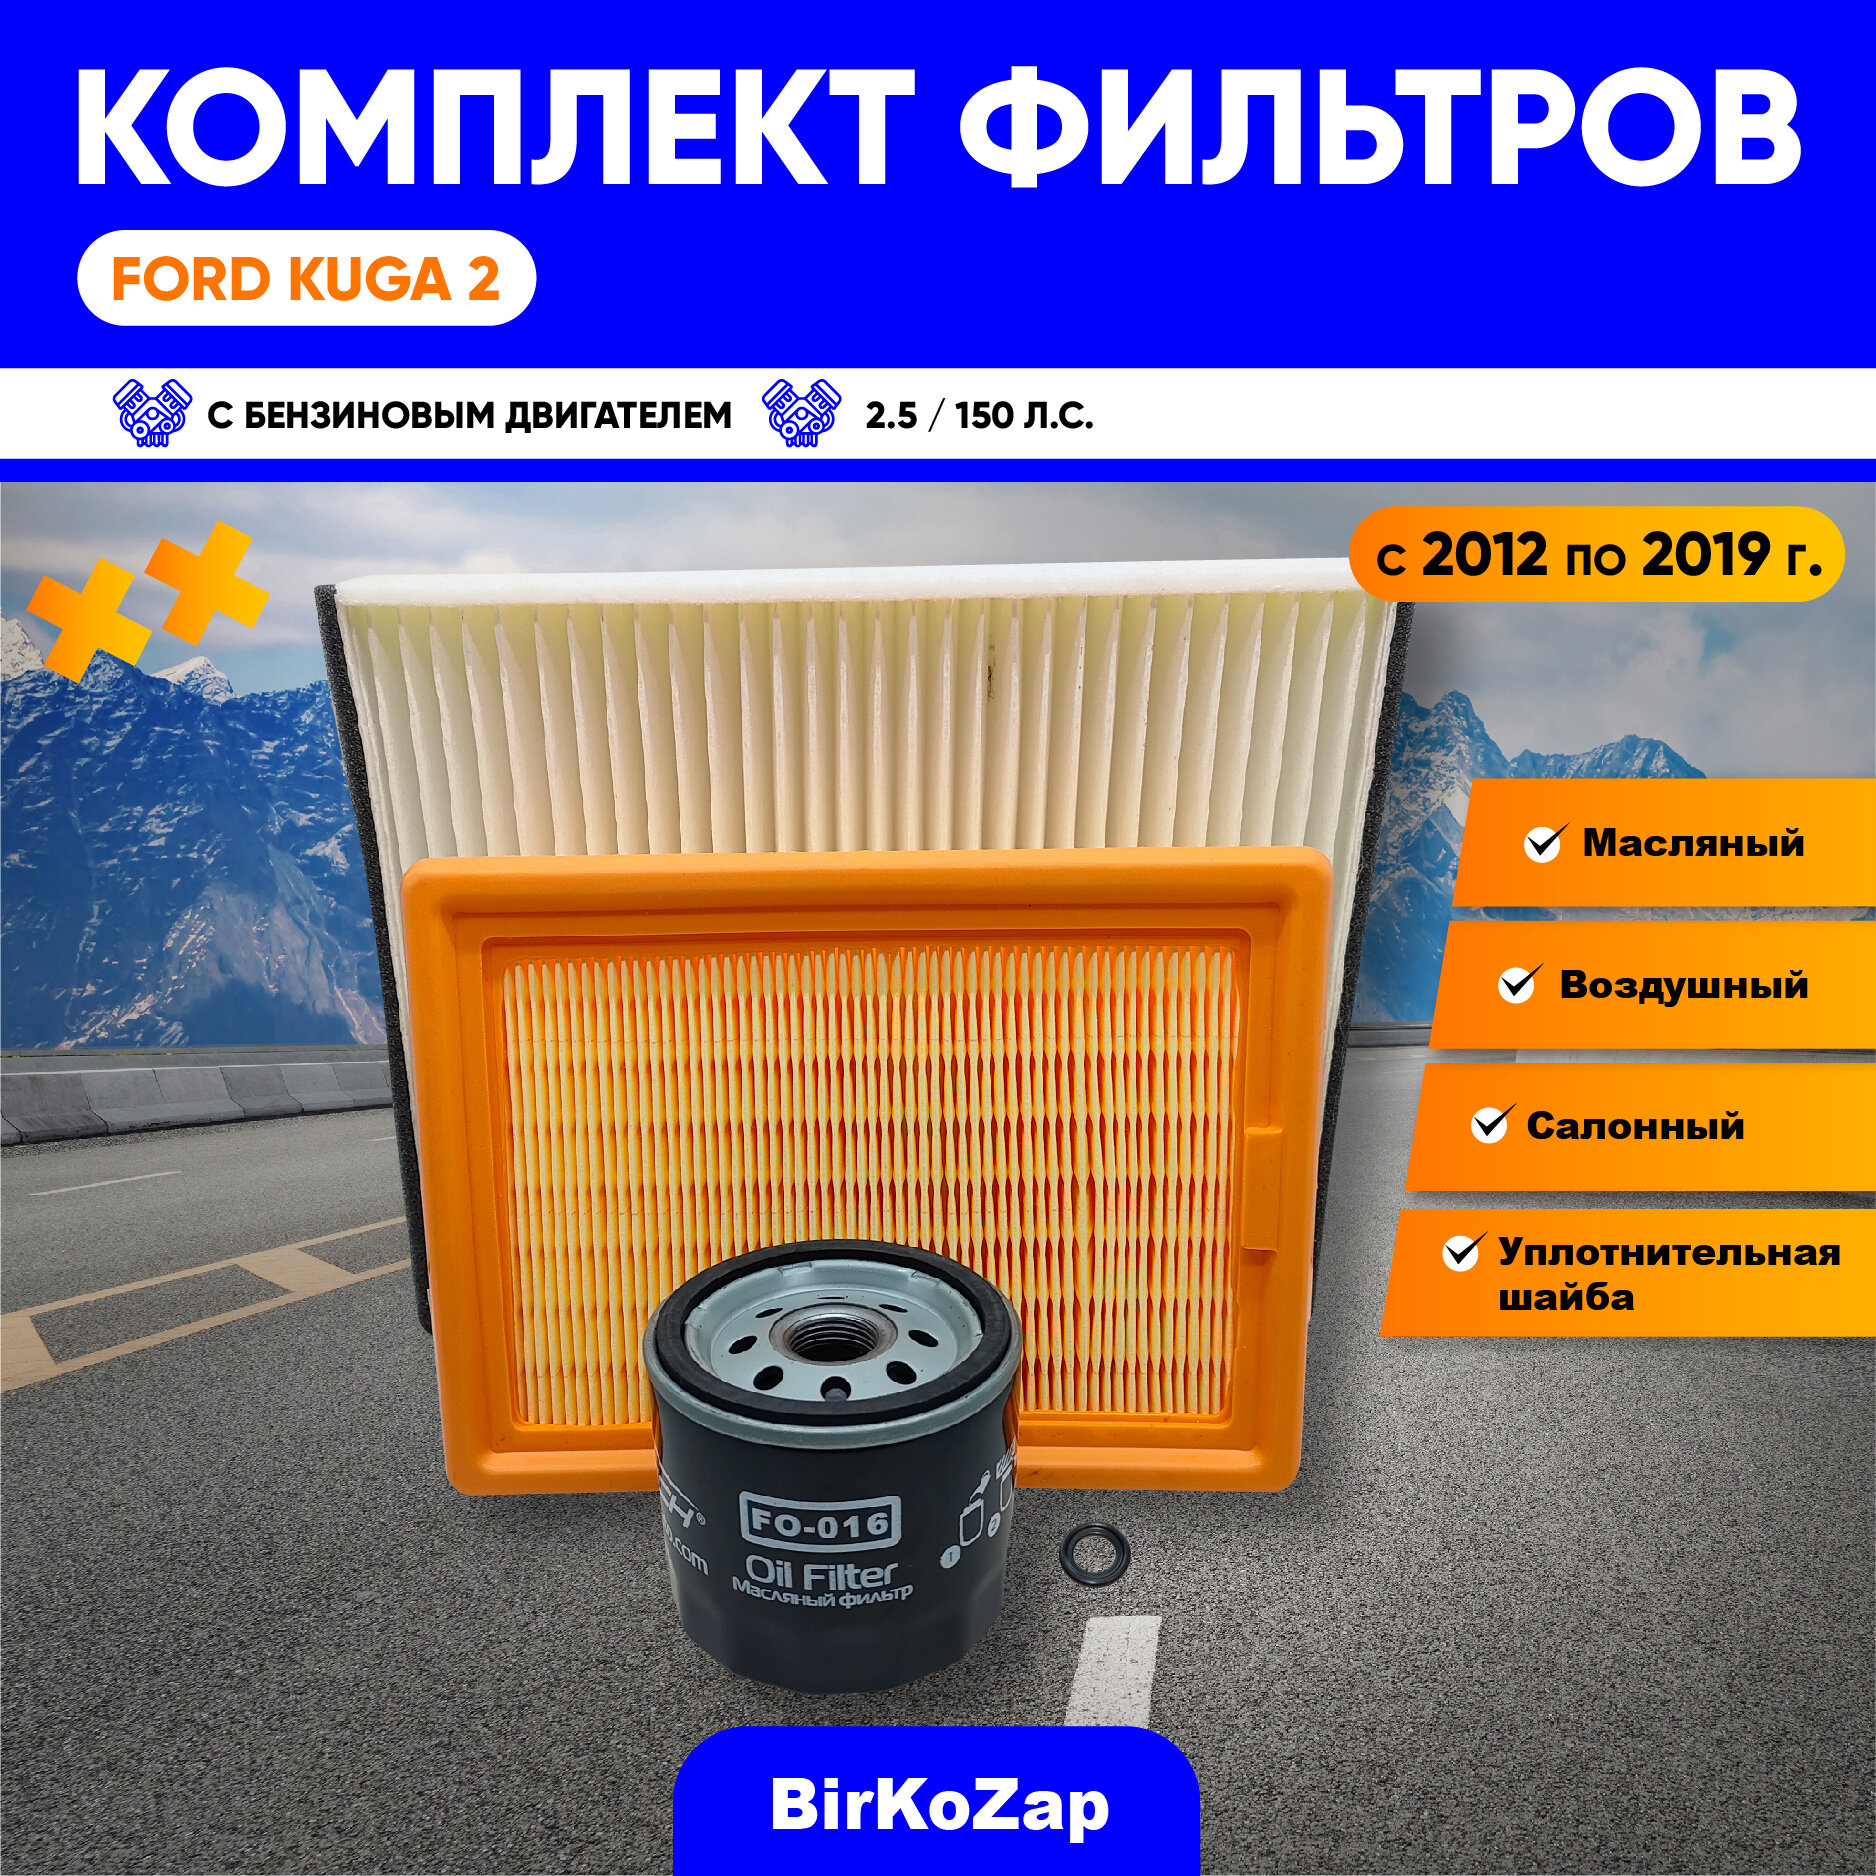 Комплект фильтров для Ford Kuga II 2.5 - 150 л. с (фильтр масляный воздушный круглый салонный)